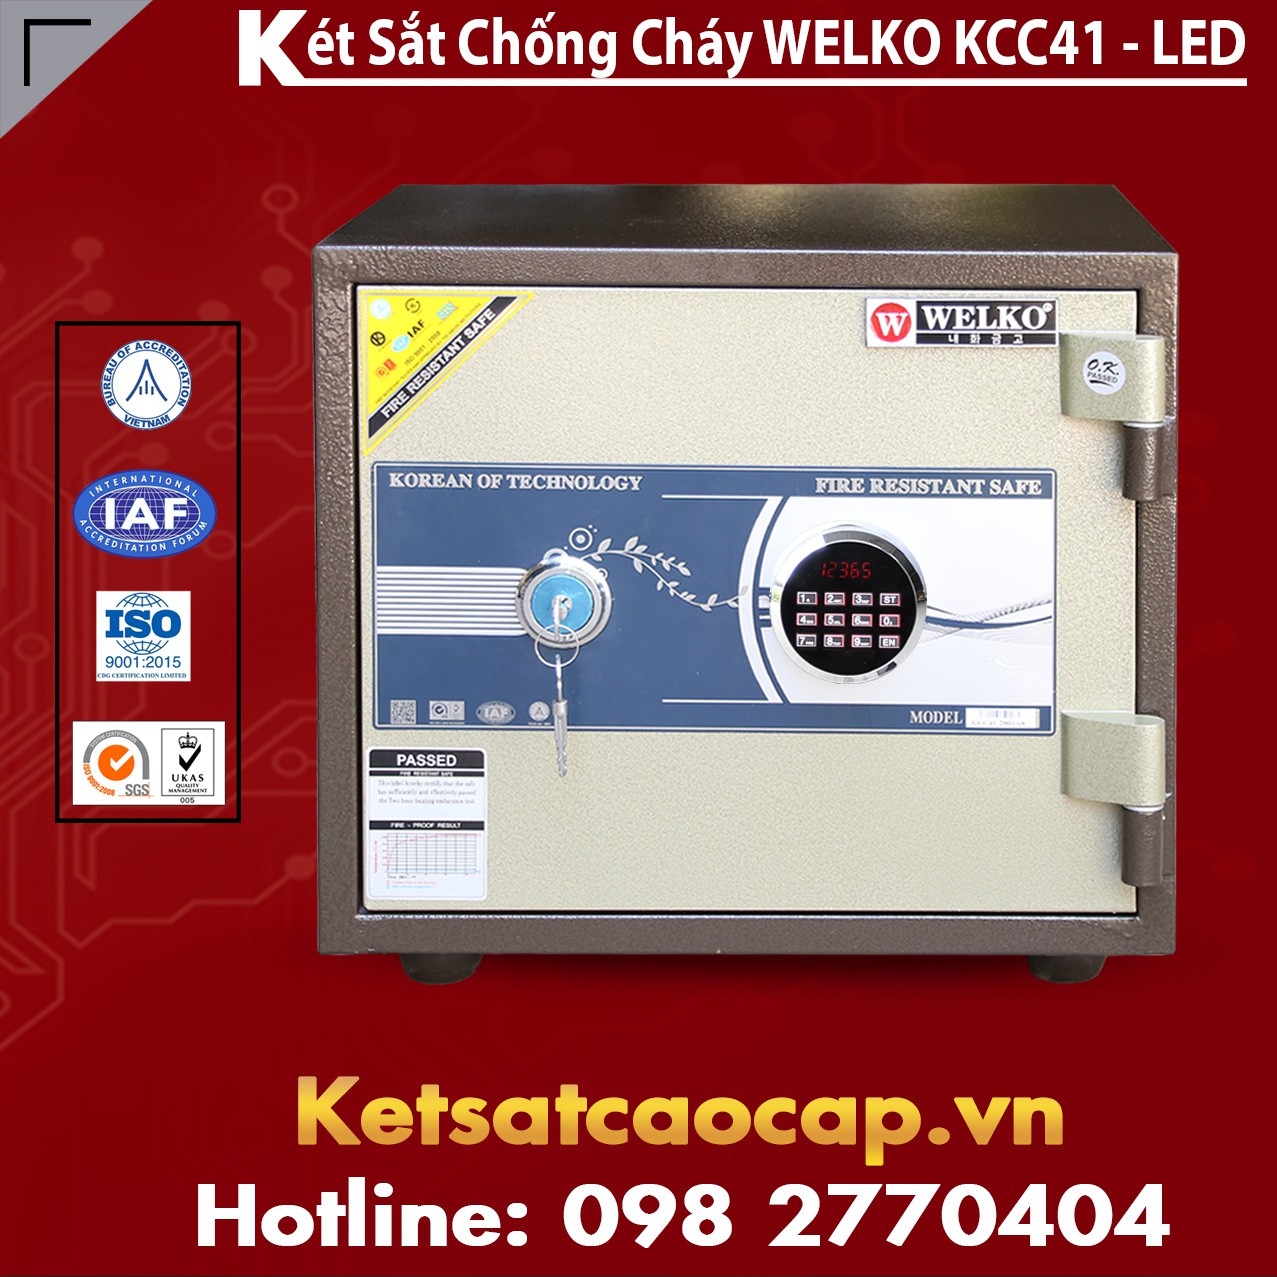 Két Sắt Huyện Bình Liêu WELKO KCC41 - LED